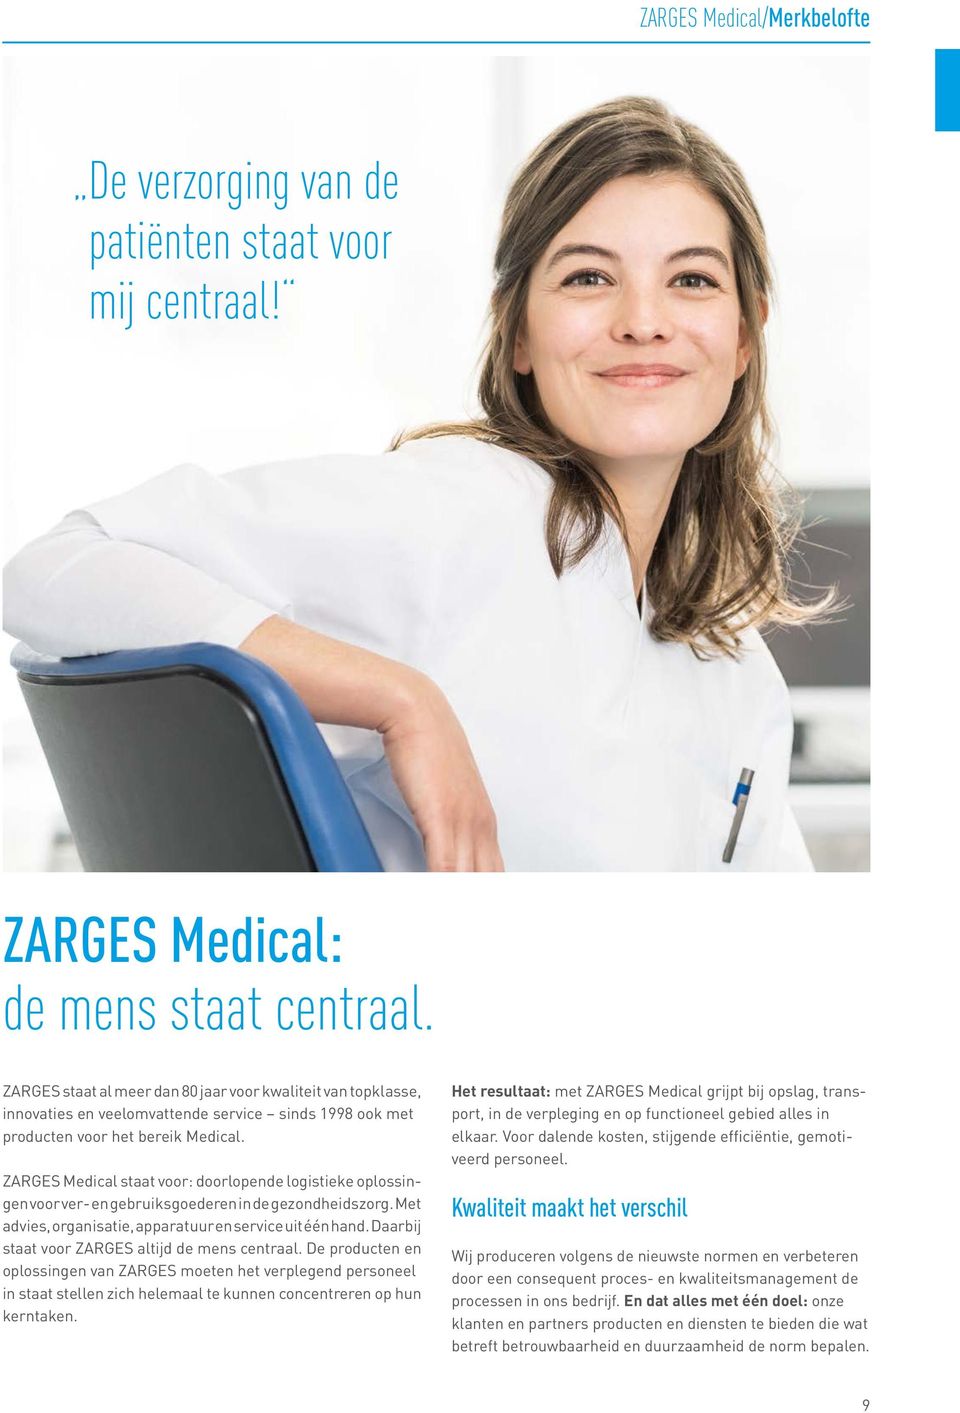 ZARGES Medical staat voor: doorlopende logistieke oplossingen voor ver- en gebruiksgoederen in de gezondheidszorg. Met advies, organisatie, apparatuur en service uit één hand.